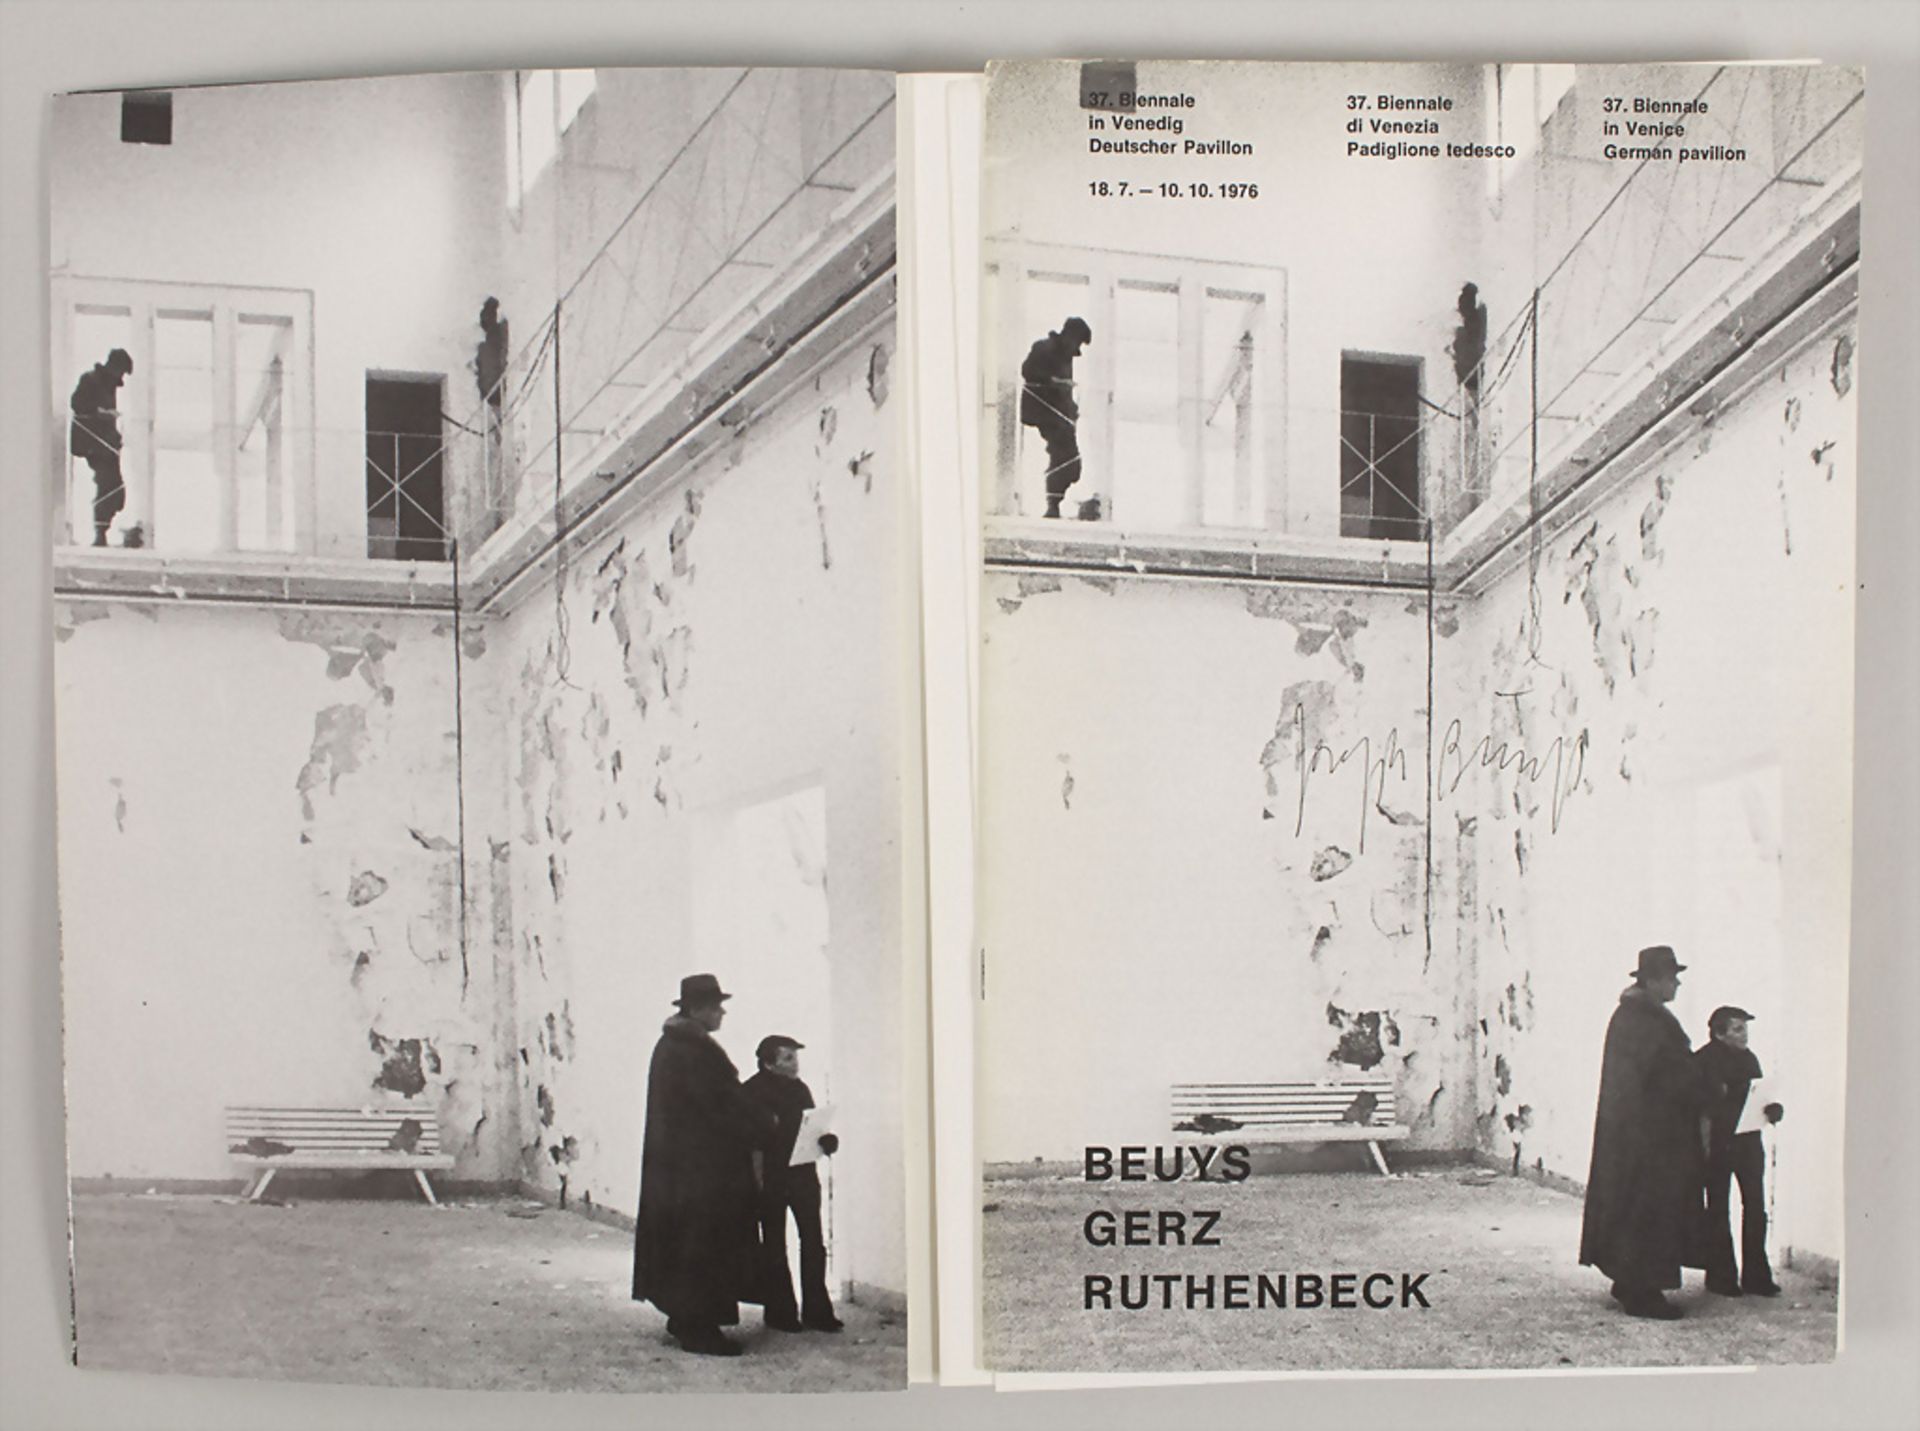 Katalog '37. Biennale 1976 - Deutscher Pavillon - Beuys Gerz Ruthenbeck', handsigniert, 1976 - Image 2 of 2